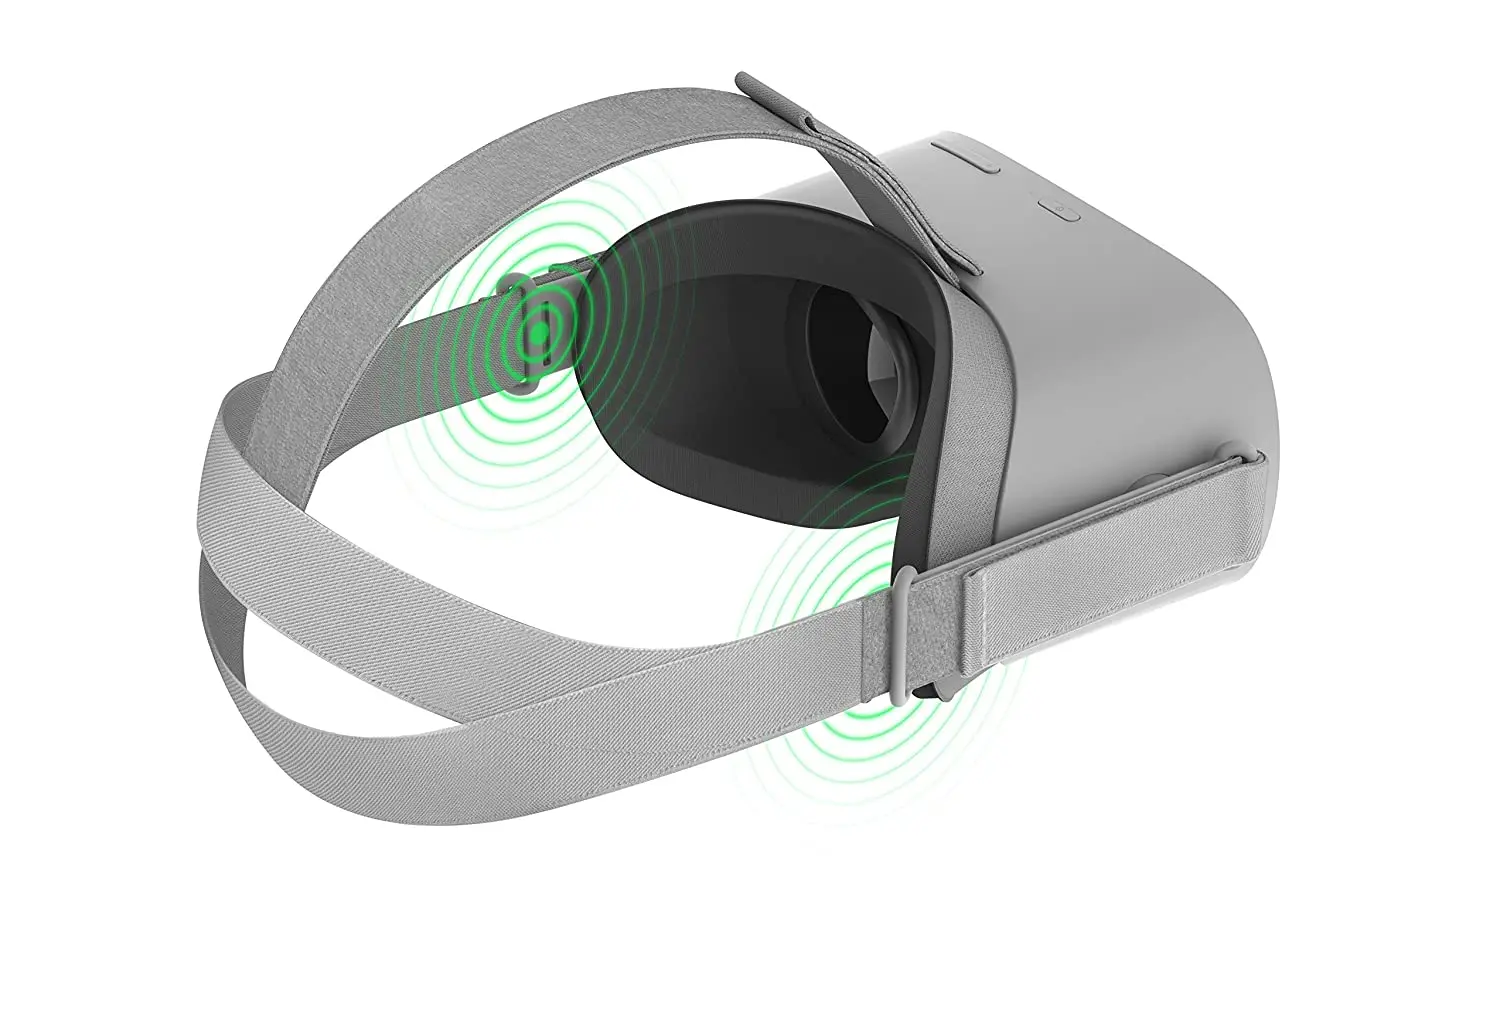 Tanie Original Oculus Go Standalone Virtual Reality Headset 32GB Wifi with 72Hz Display sklep